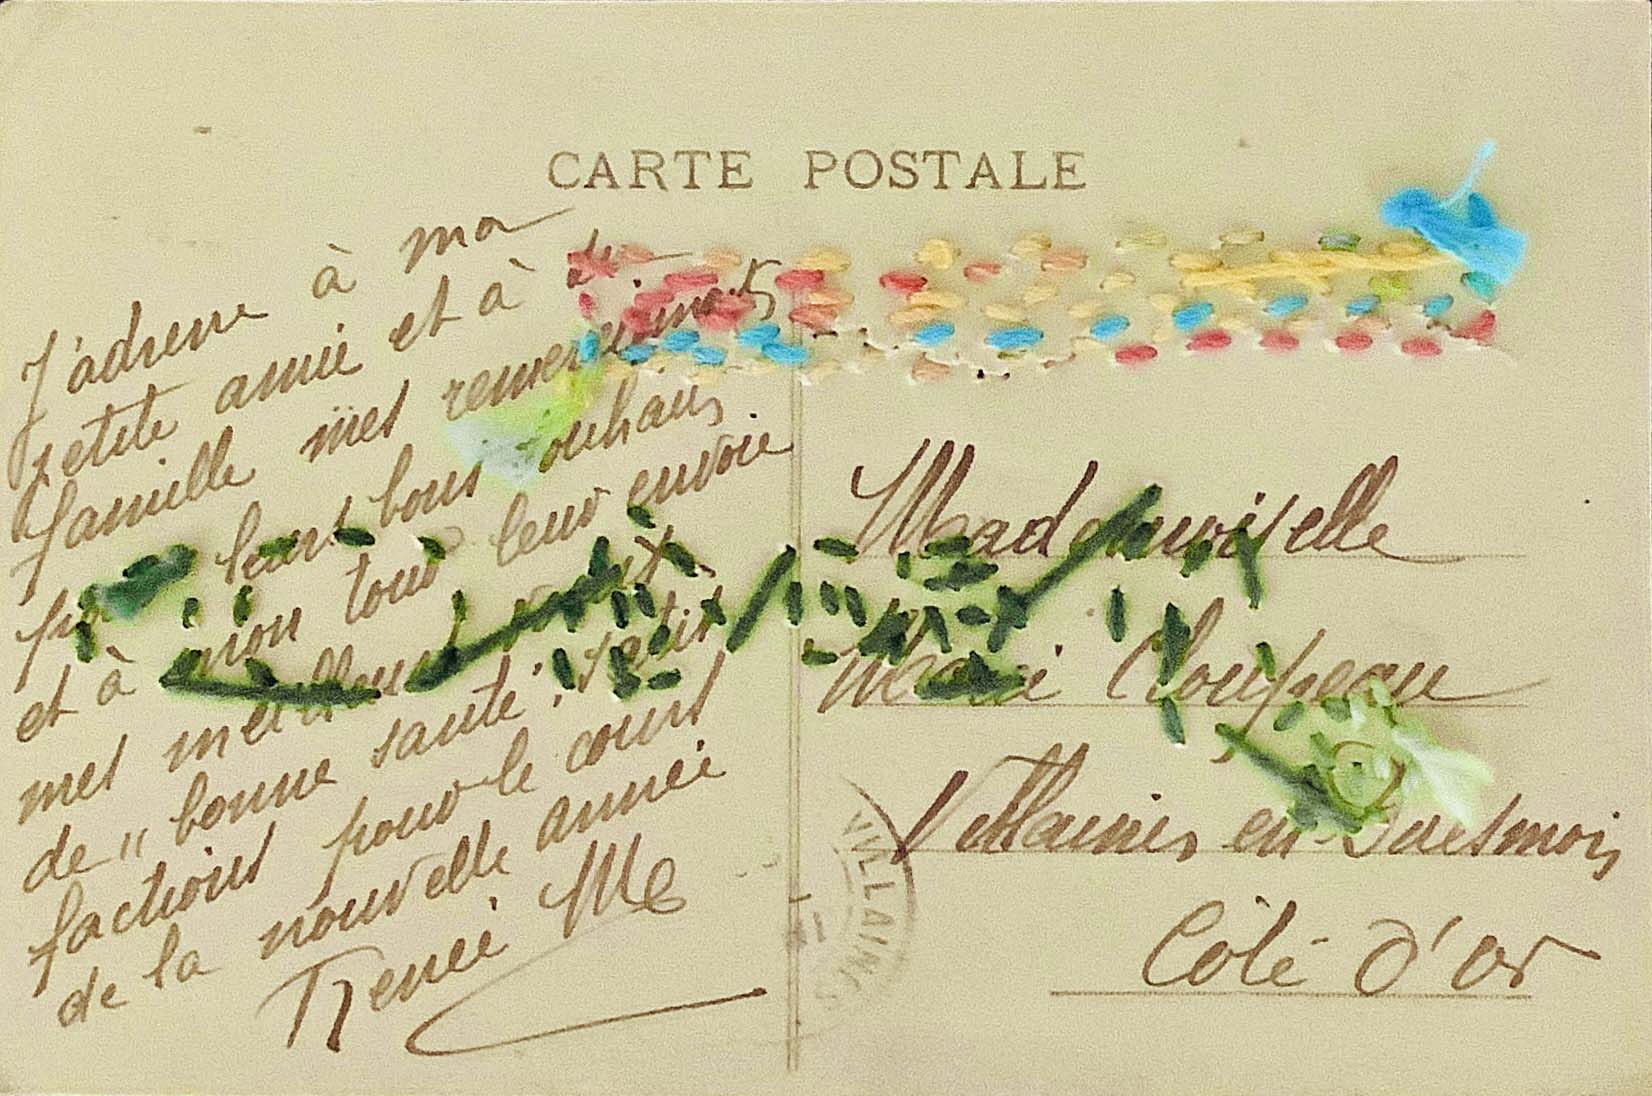 Carte postale no.3 (verso), Anne-Julie Hynes 